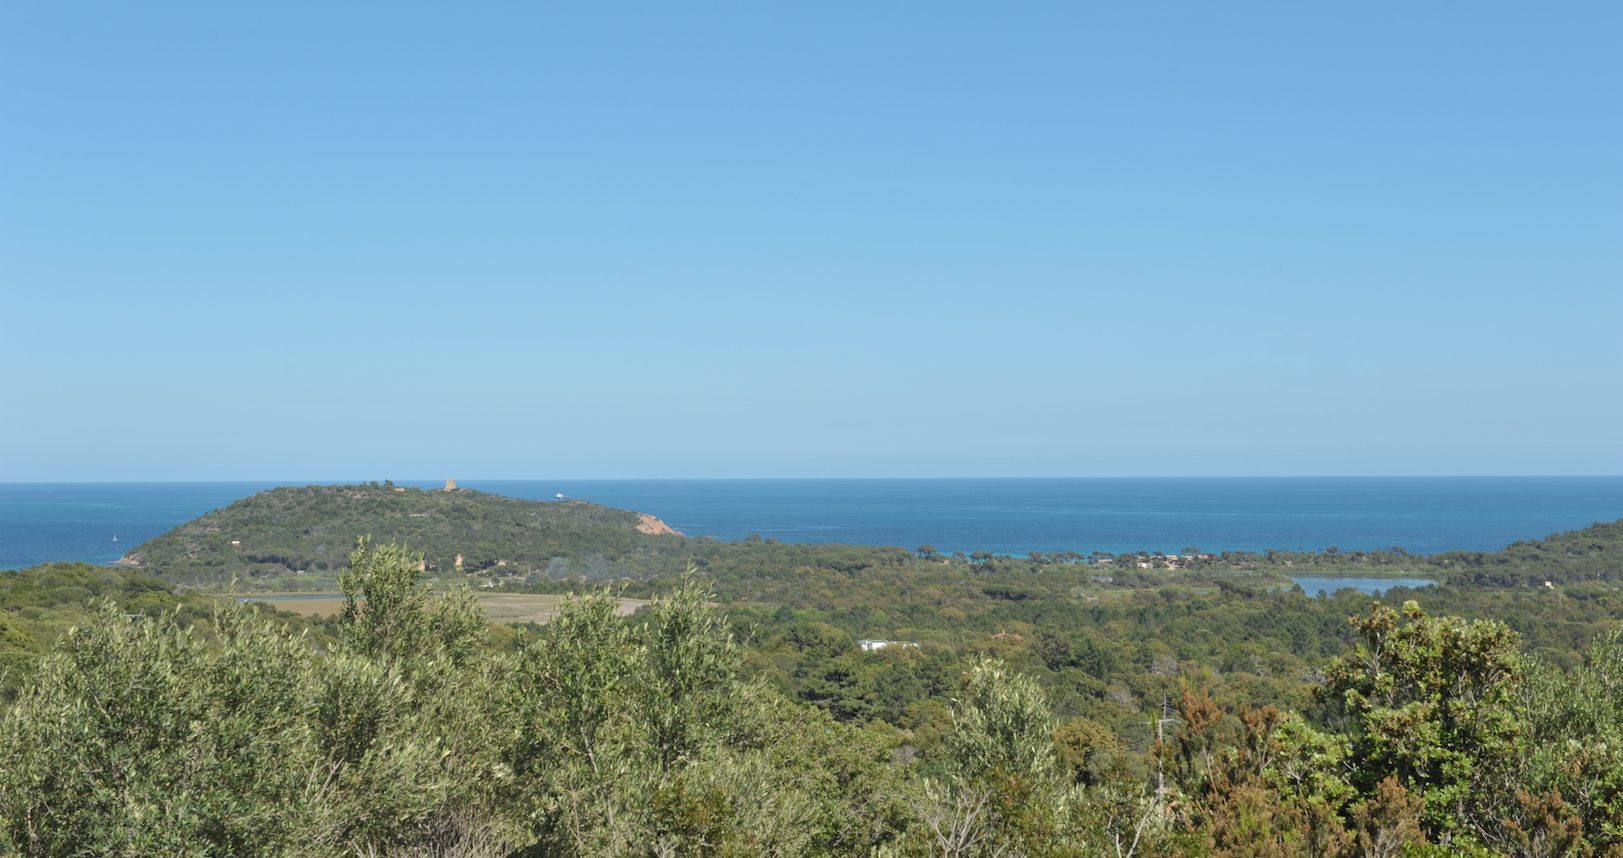 Entre Pinarello et St Cyprien: Terrain à bâtir VIABILISÉ avec SUPERBE VUE MER PANORAMIQUE (de l'îlot de Ruscana, la Tour de Pinarello, et jusqu'à Cirindinu).